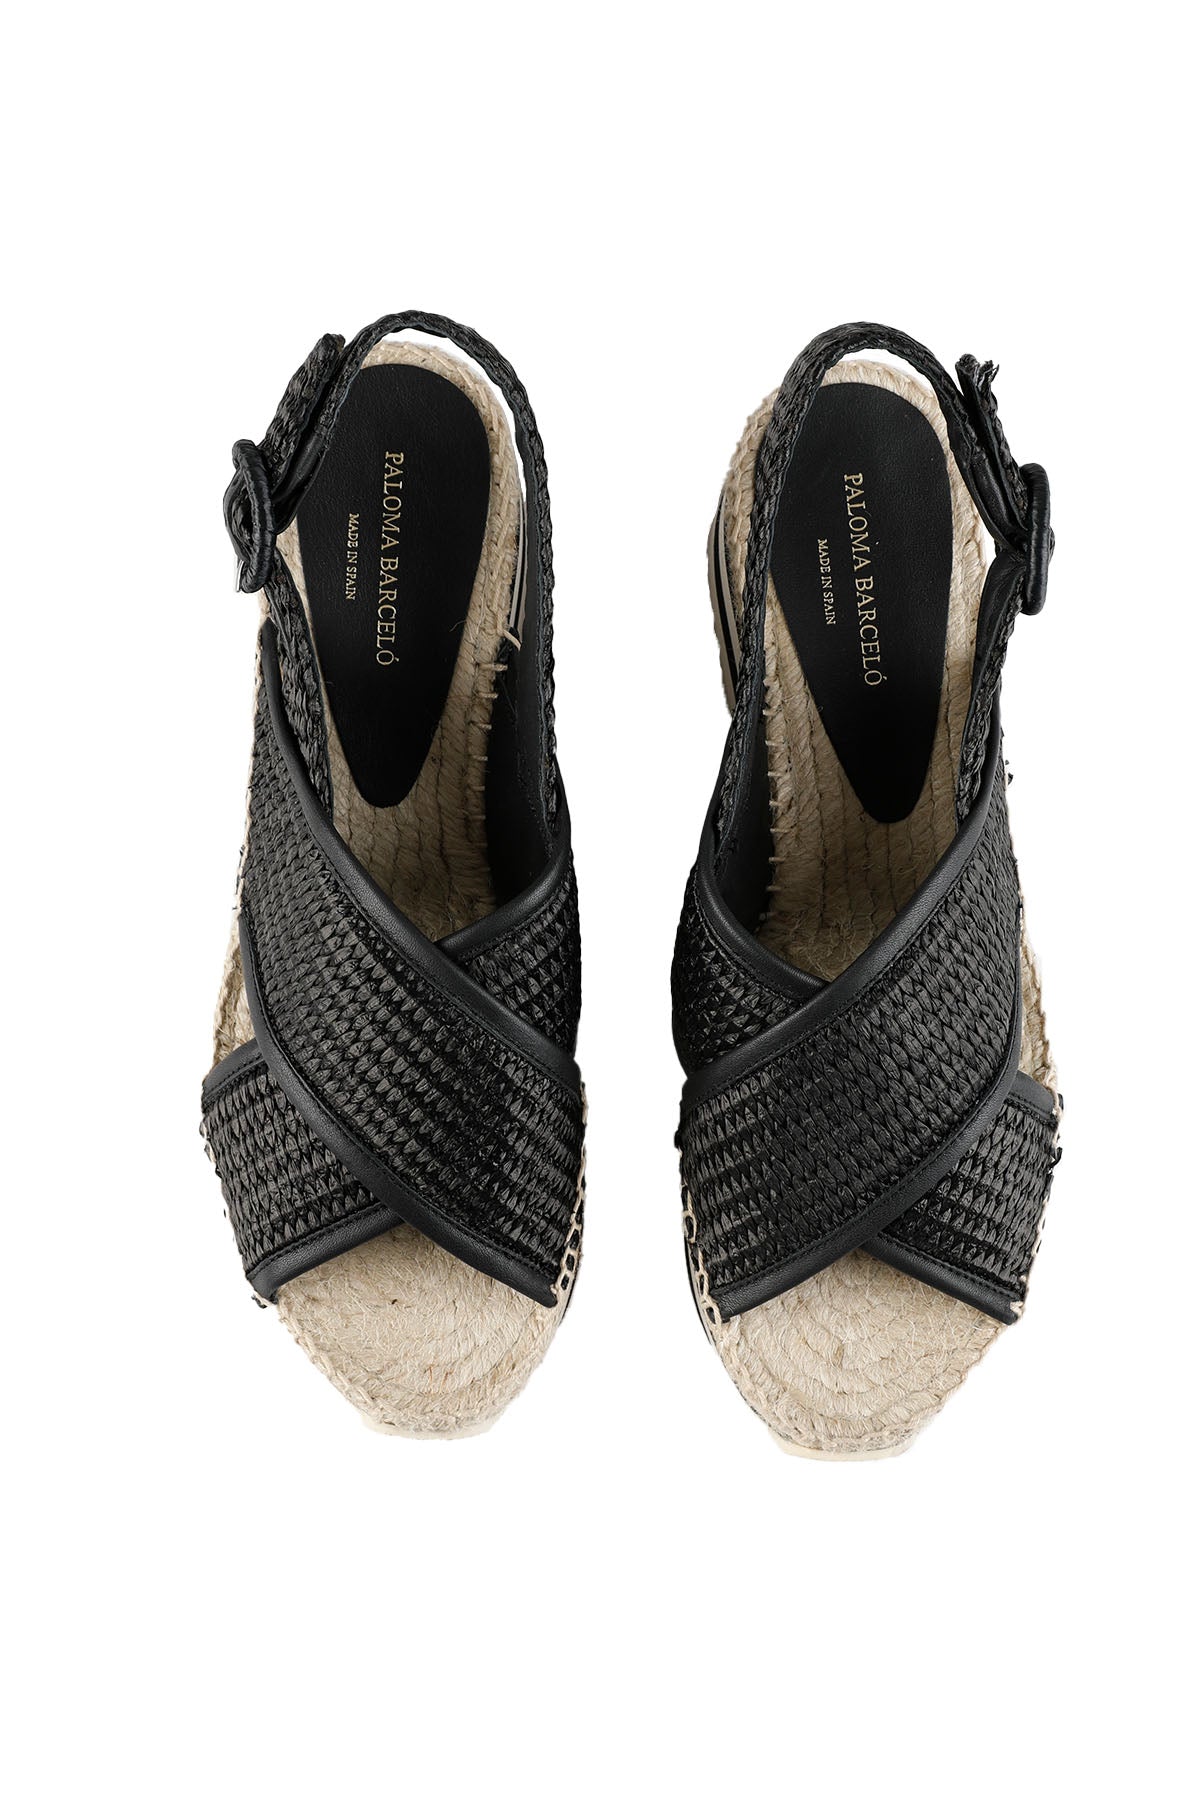 Paloma Barcelo Çapraz Bantlı Dolgu Topuk Sandalet-Libas Trendy Fashion Store